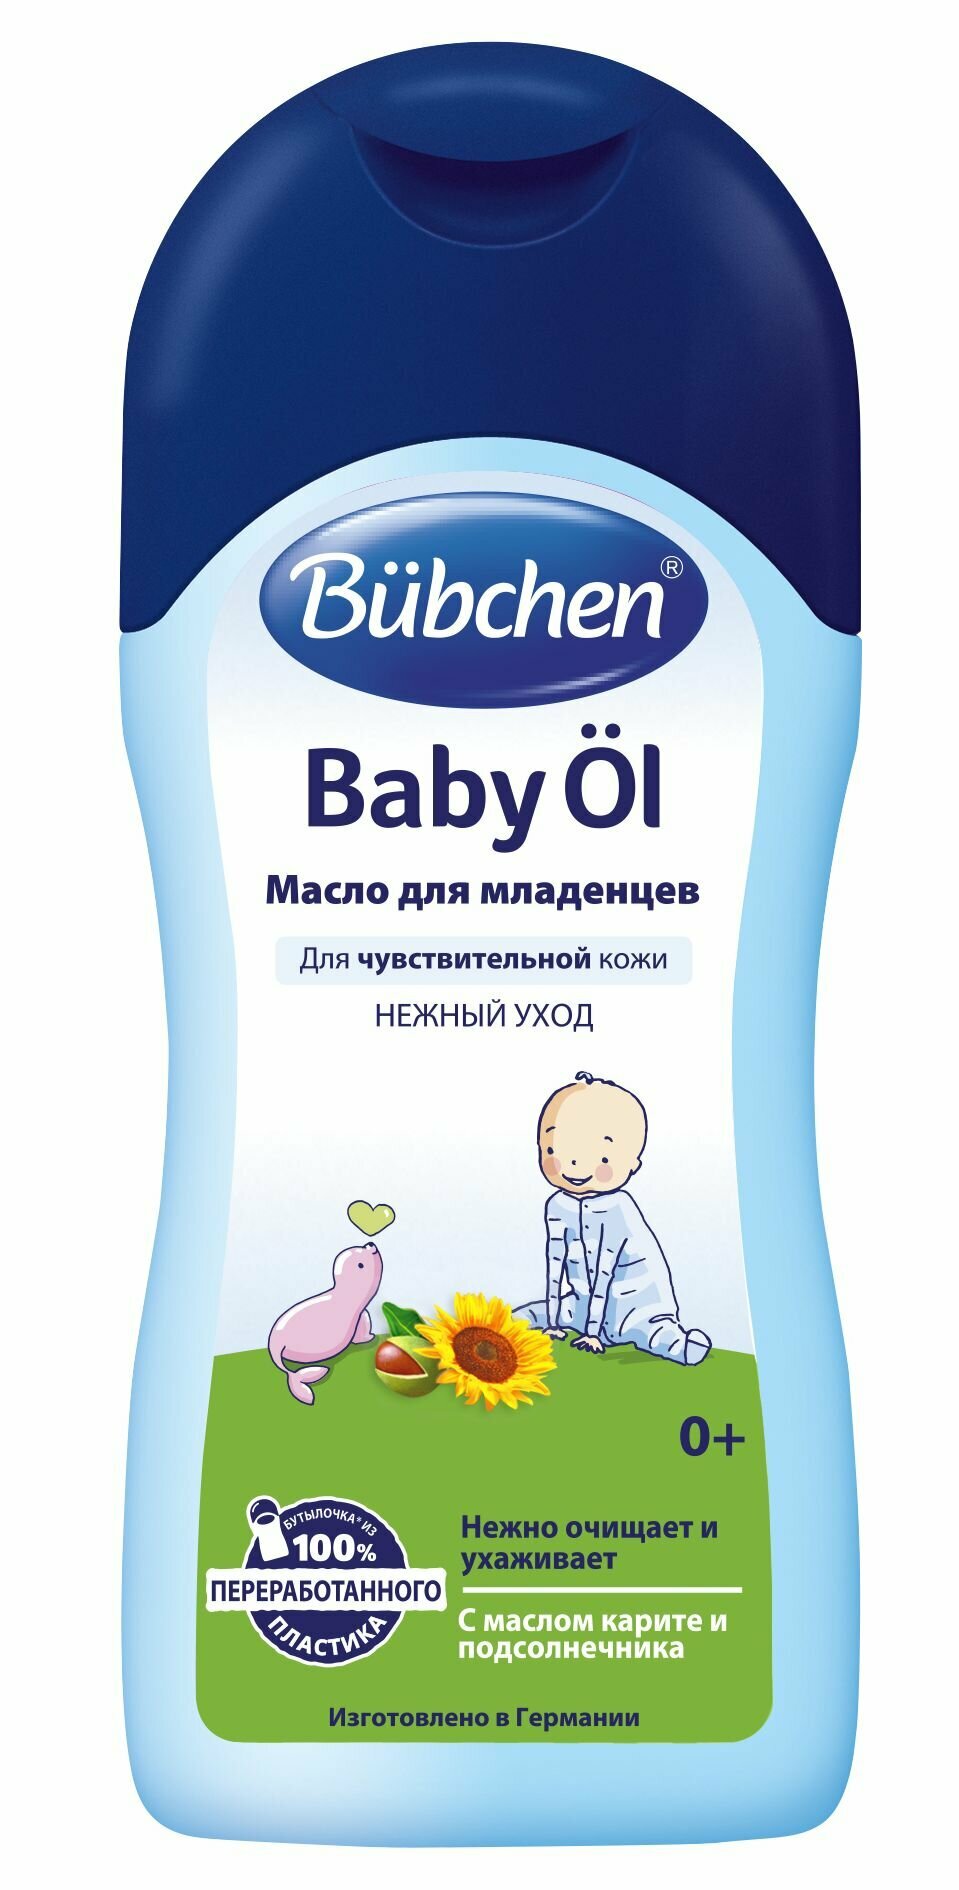 Bubchen Масло для младенцев / Baby Ol, 200 мл